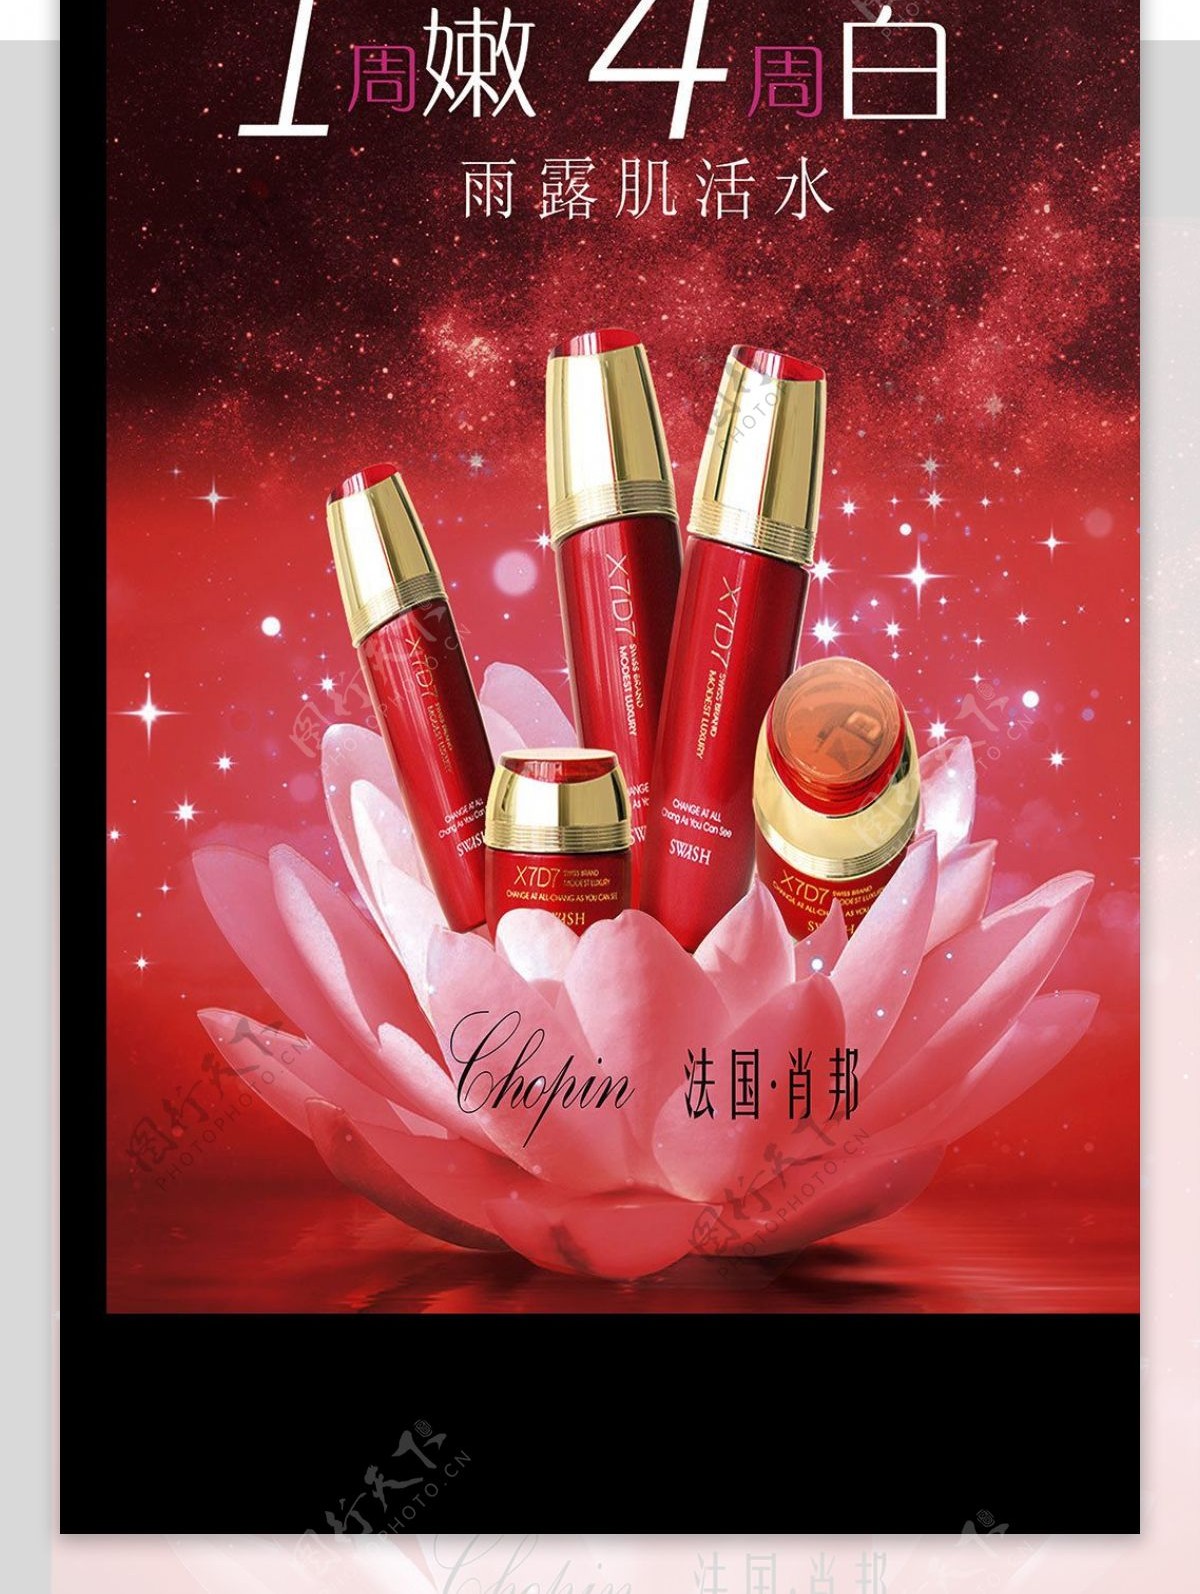 2017年红色化妆品化妆品包装化妆品宣传